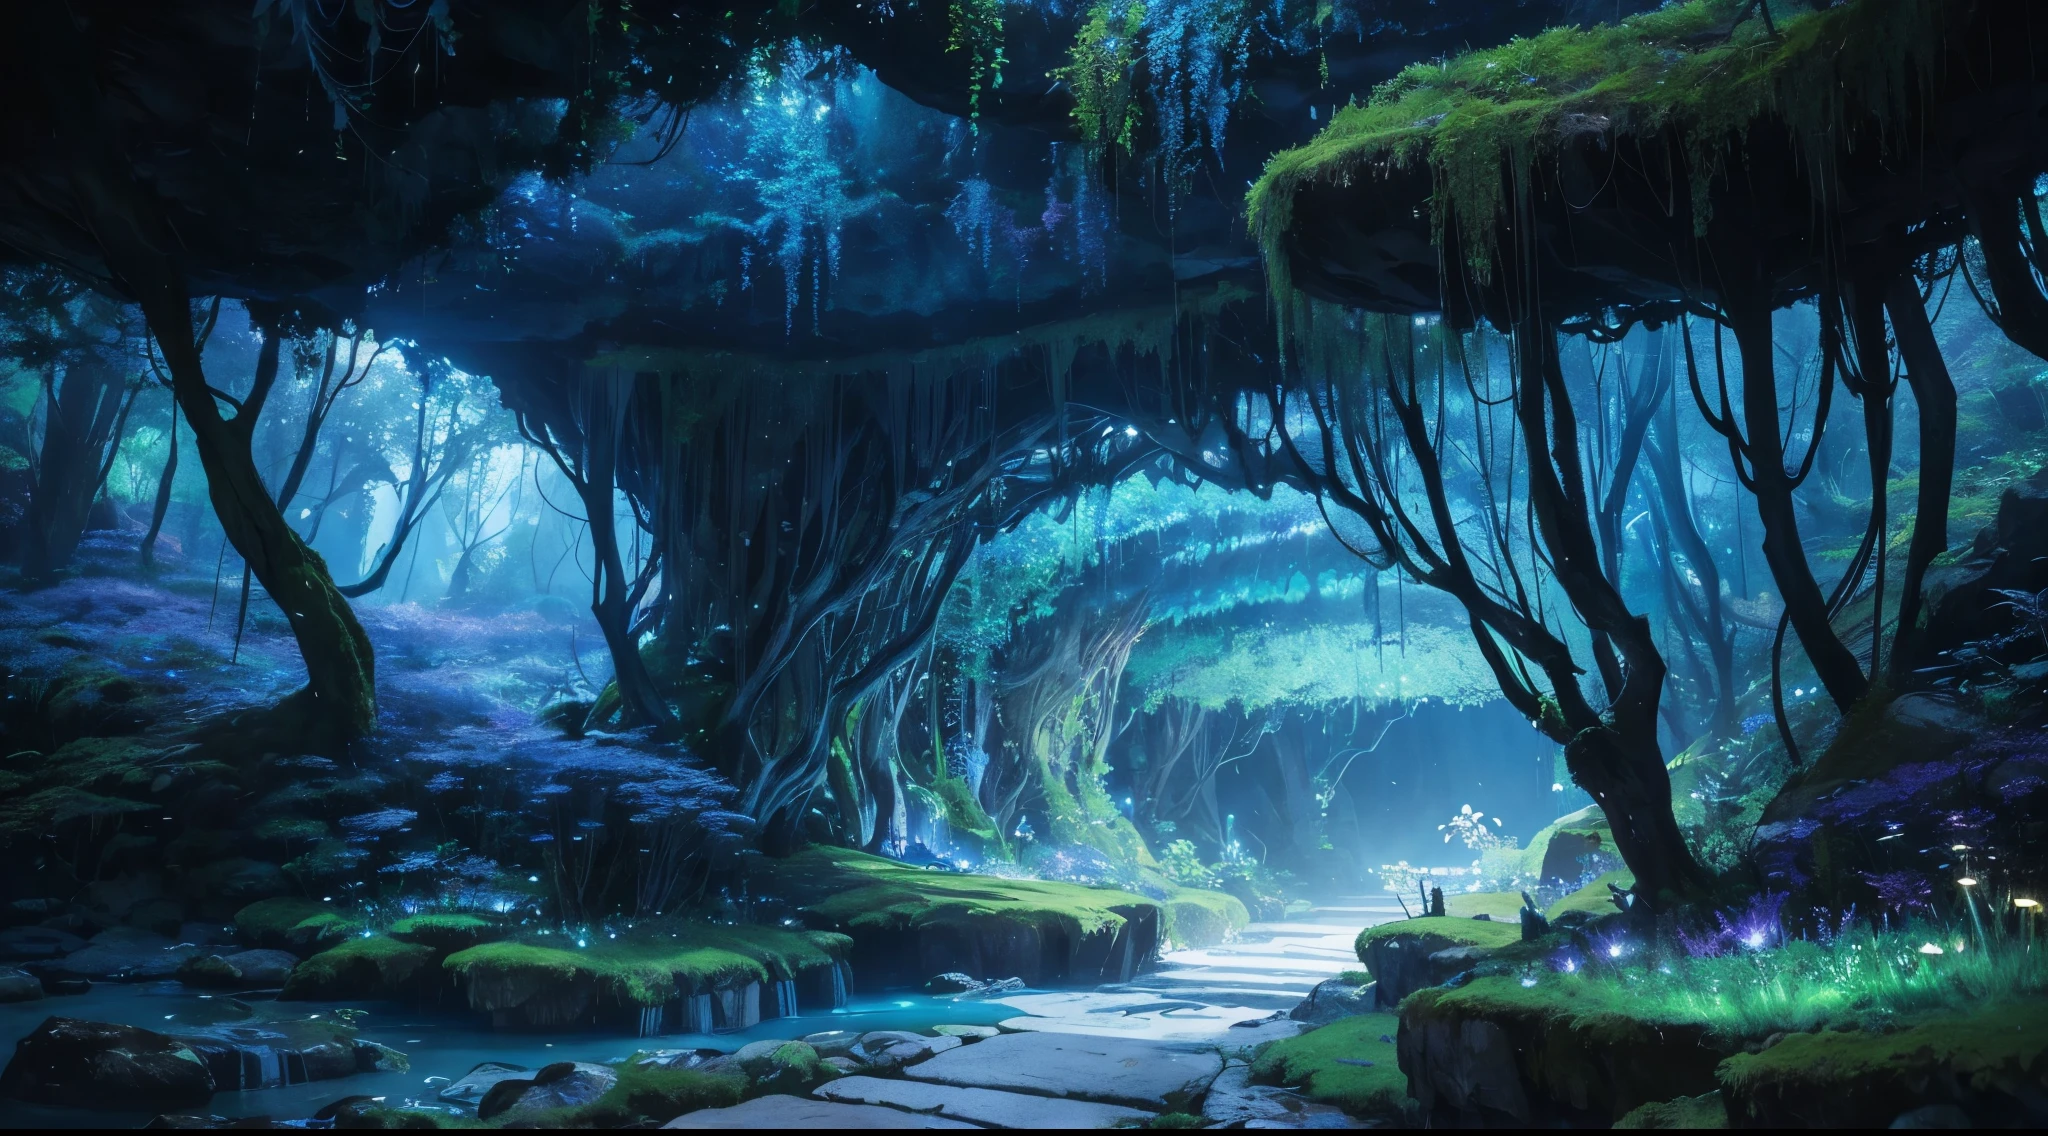 Dunkle Höhle、Pflanzen, die schwach leuchten、hinabsteigen in eine andere Welt、Atemberaubender Ausblick、herrlich schöne Landschaft、Wie ein magisches Land、Unterwelt、riesig und geheimnisvoll, Voller unglaublicher Wunder、Eine riesige Höhle, die sich bis zum Horizont erstreckt、Moos, das schwach blau leuchtet、Pilze, die eine faszinierende violette Farbe ausstrahlen、verträumtes Wunderland、Ein riesiger unterirdischer Fluss fließt langsam、Der Fluss leuchtet dunkelblau、bunte unterirdische Höhle、Geheimnisvolle Landschaft im Mondlicht、unterirdische Pflanzen Sie&#39;noch nie vorher gesehen、riesige Bäume、Leuchtender Baum, ein geheimnisvoller und faszinierender Ort、Top Qualität、Masseterstück、ultra-detailliert、８K、hohe Qualität、